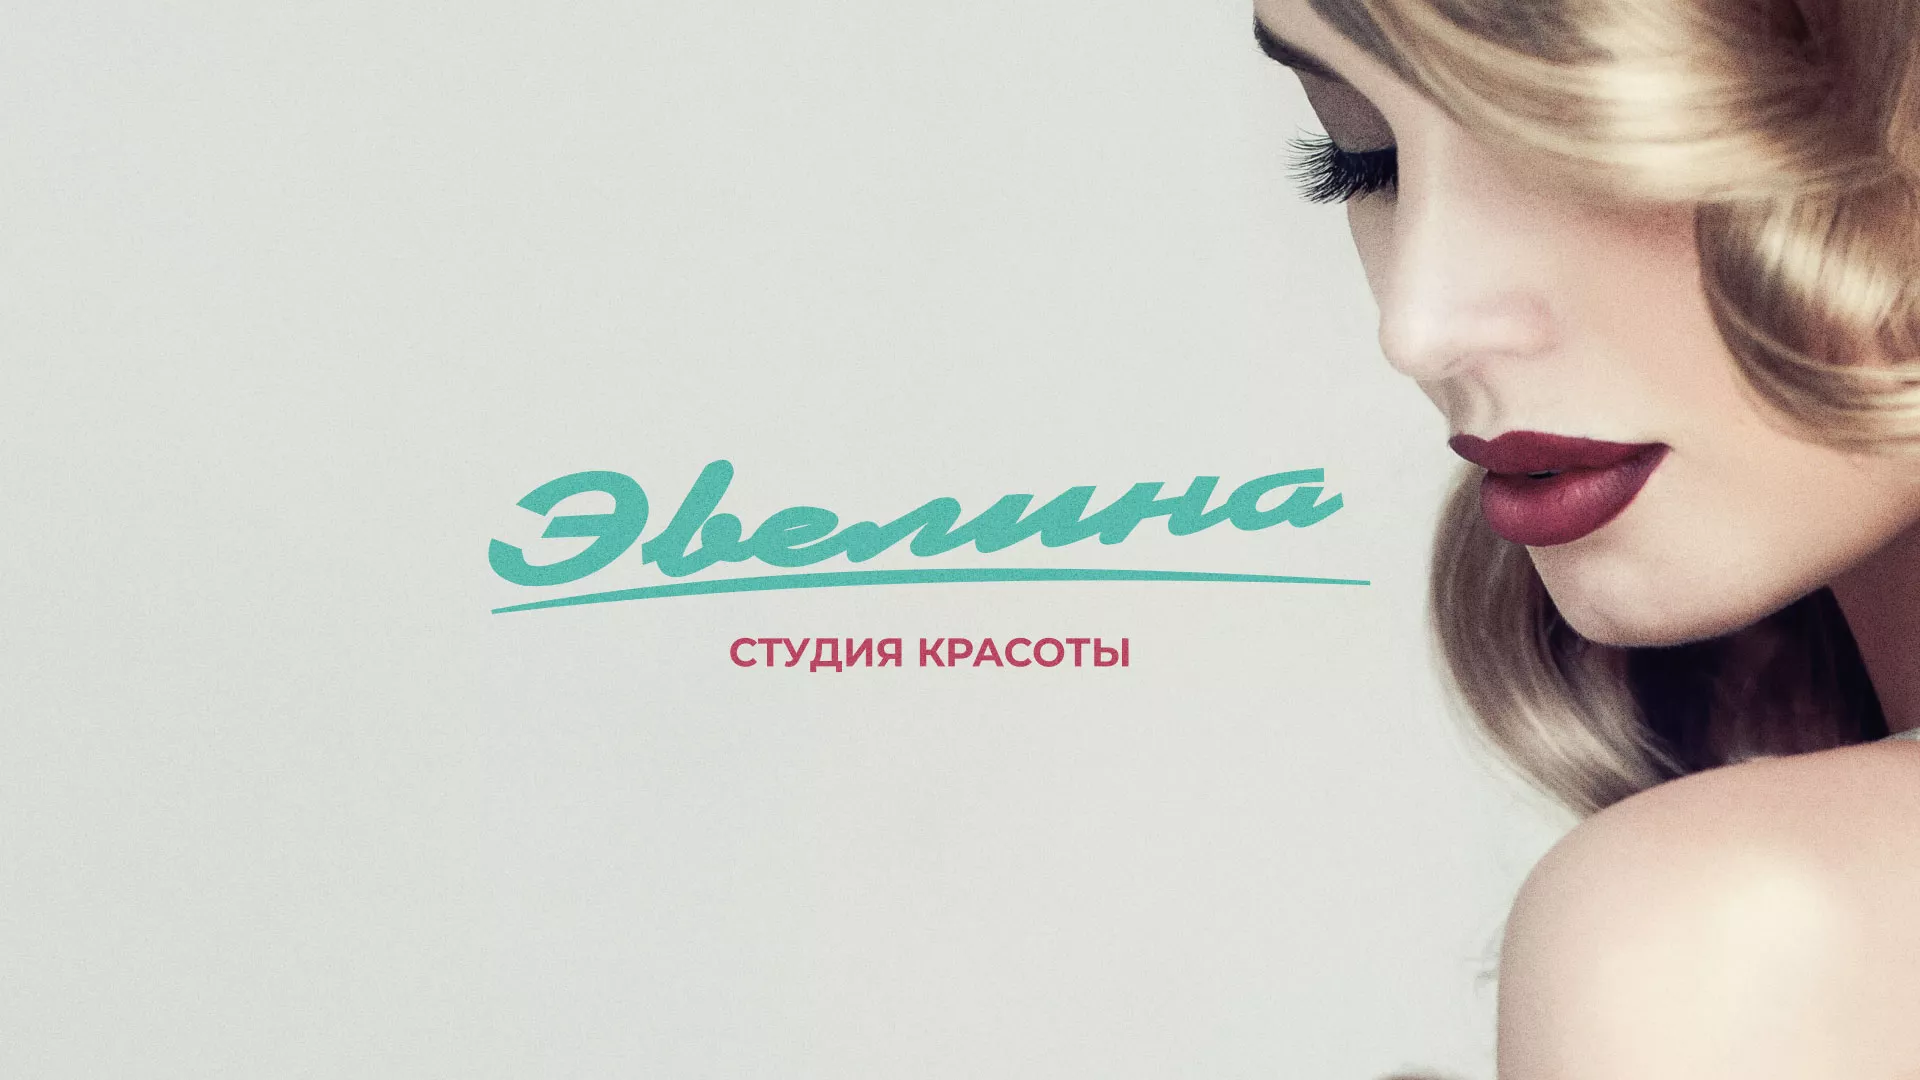 Разработка сайта для салона красоты «Эвелина» в Александрове